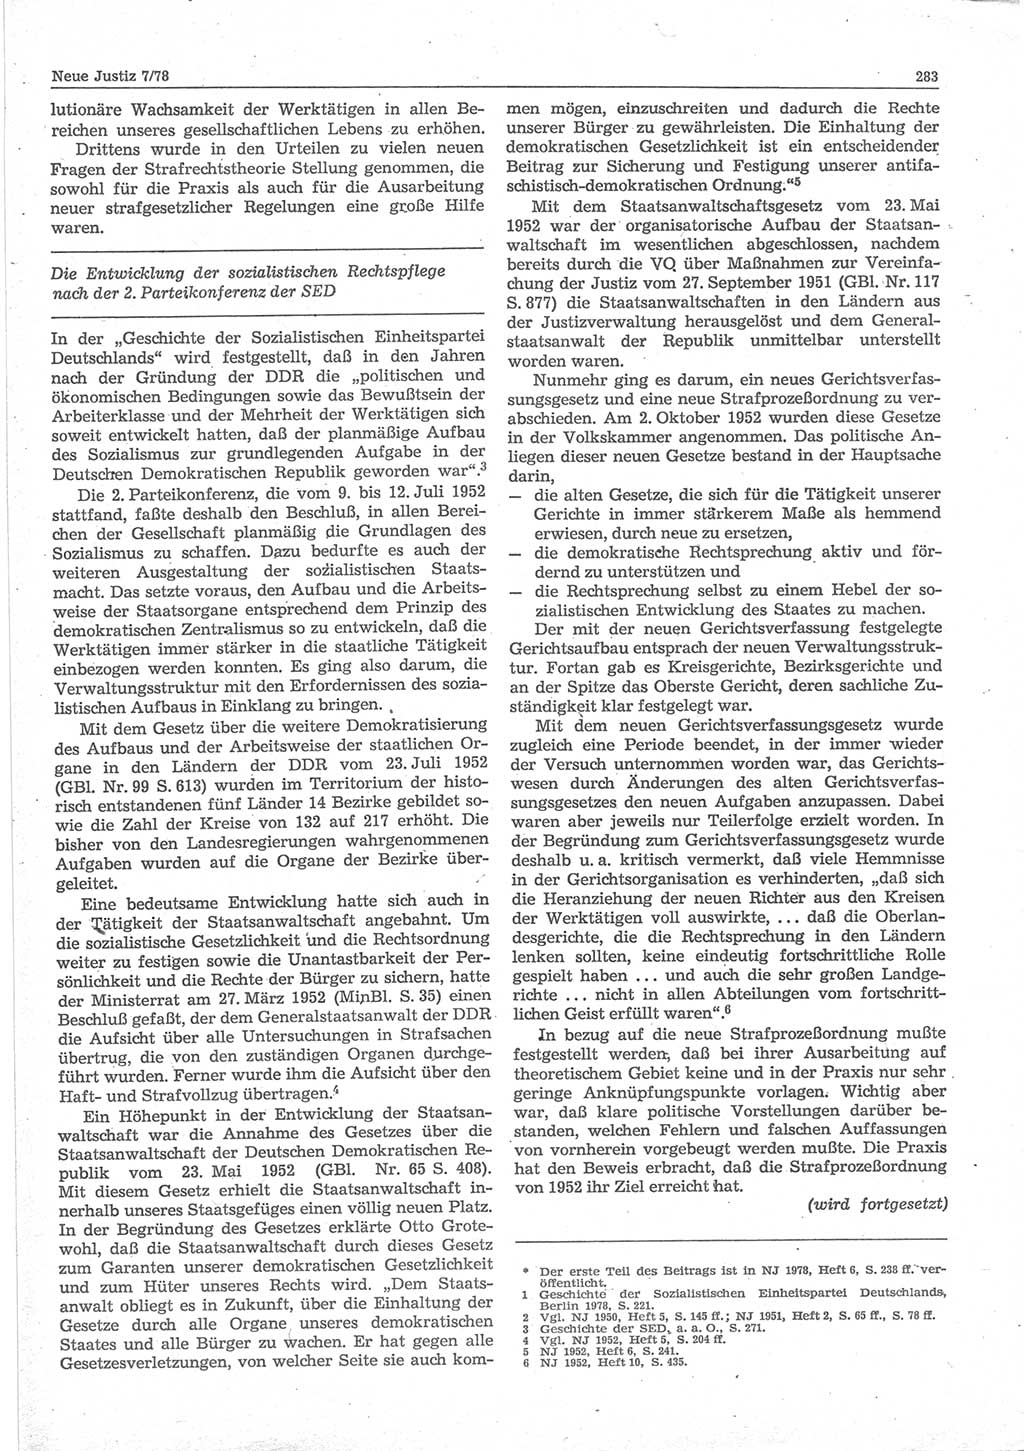 Neue Justiz (NJ), Zeitschrift für sozialistisches Recht und Gesetzlichkeit [Deutsche Demokratische Republik (DDR)], 32. Jahrgang 1978, Seite 283 (NJ DDR 1978, S. 283)